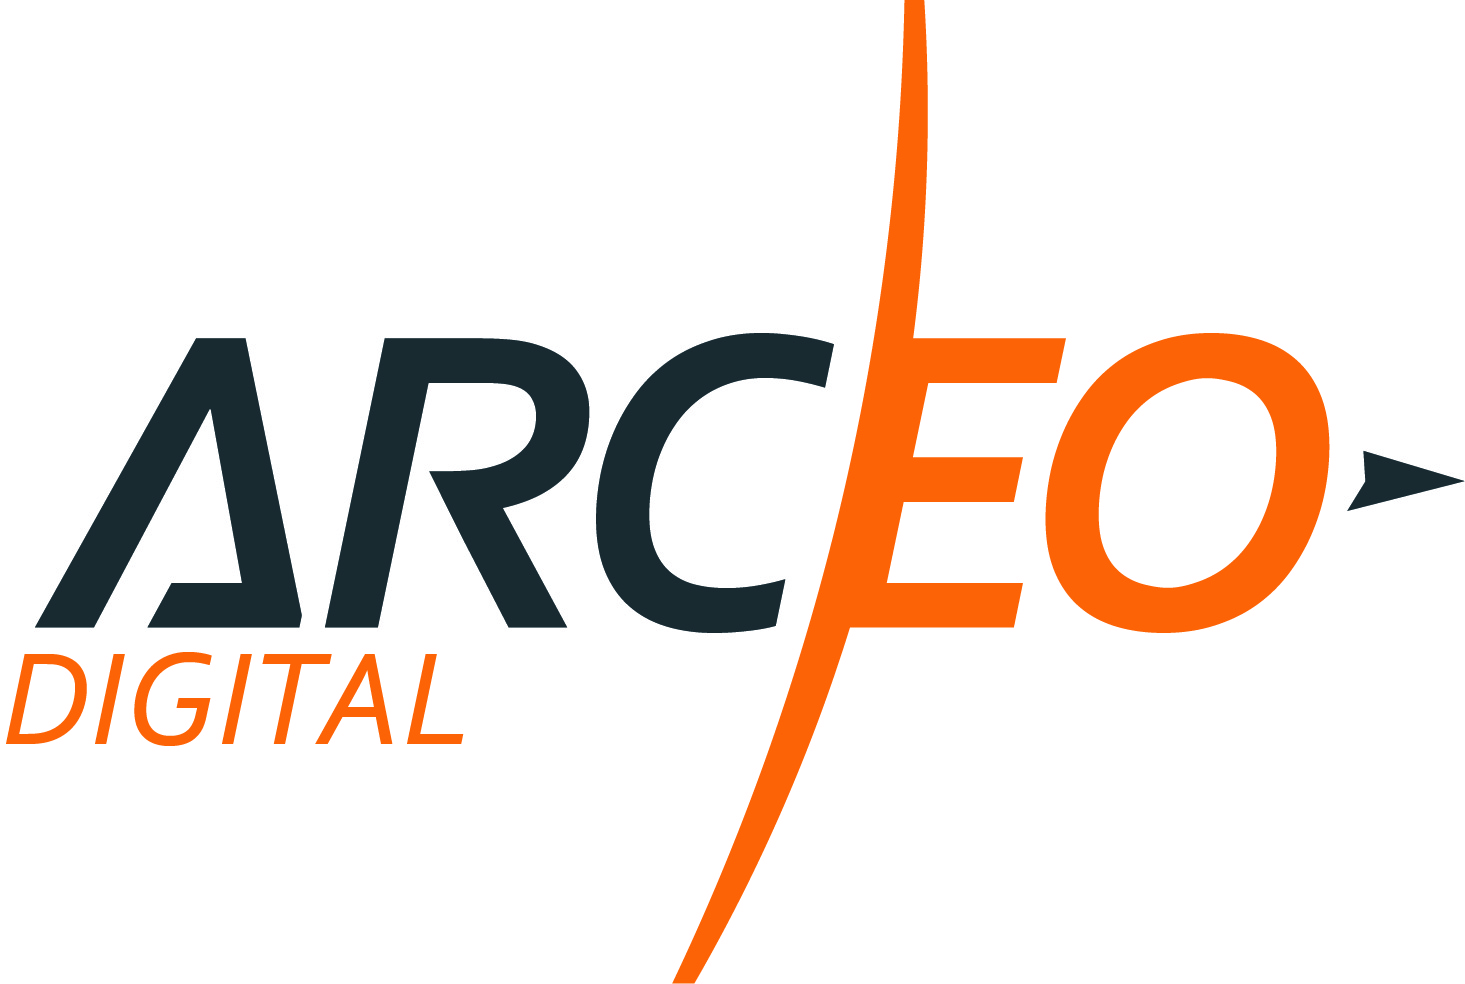 Arceo Digital